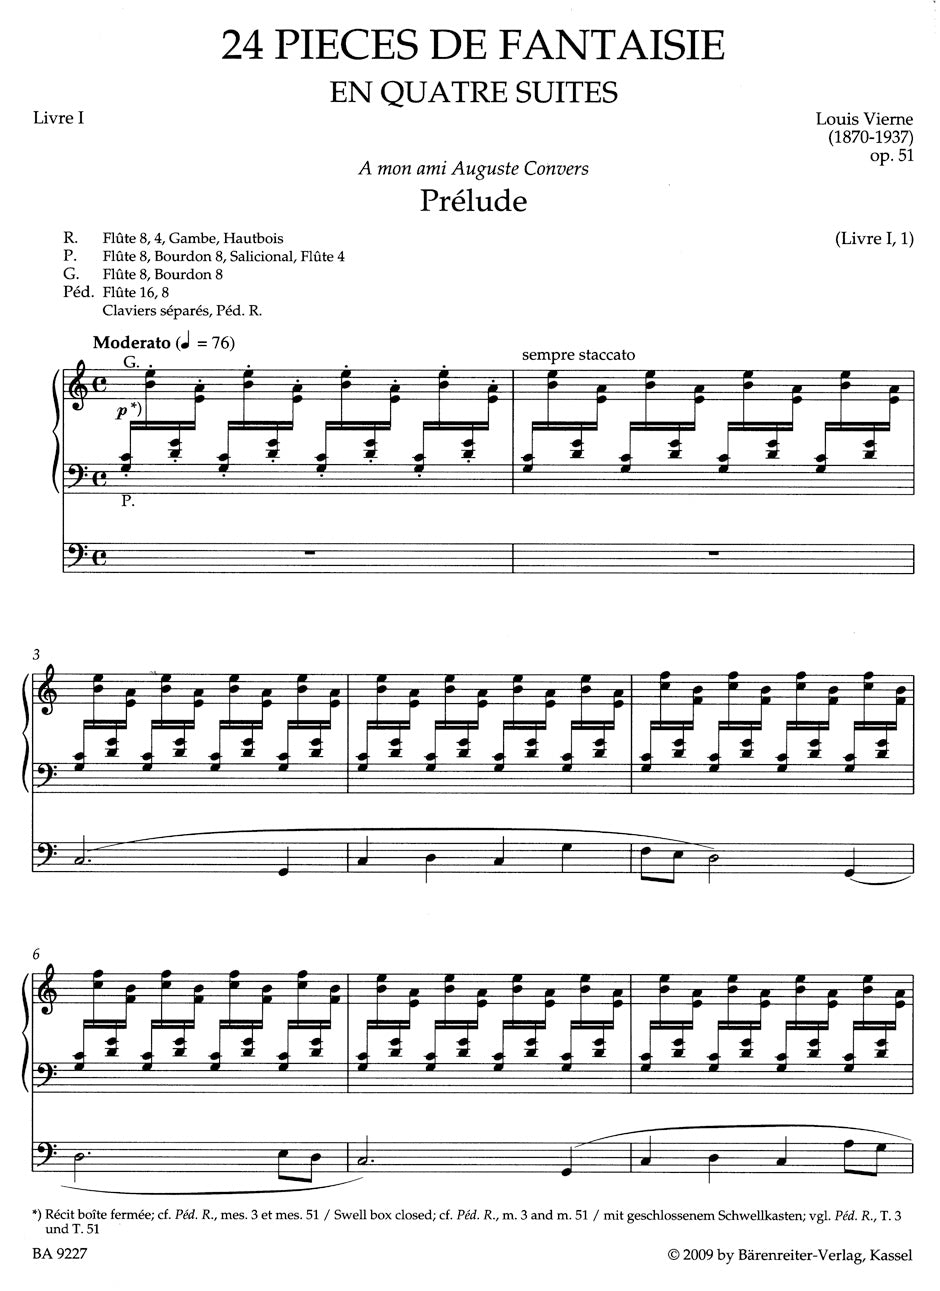 Vierne Pièces de Fantaisie en quatre suites, Livre I op. 51 (1926)